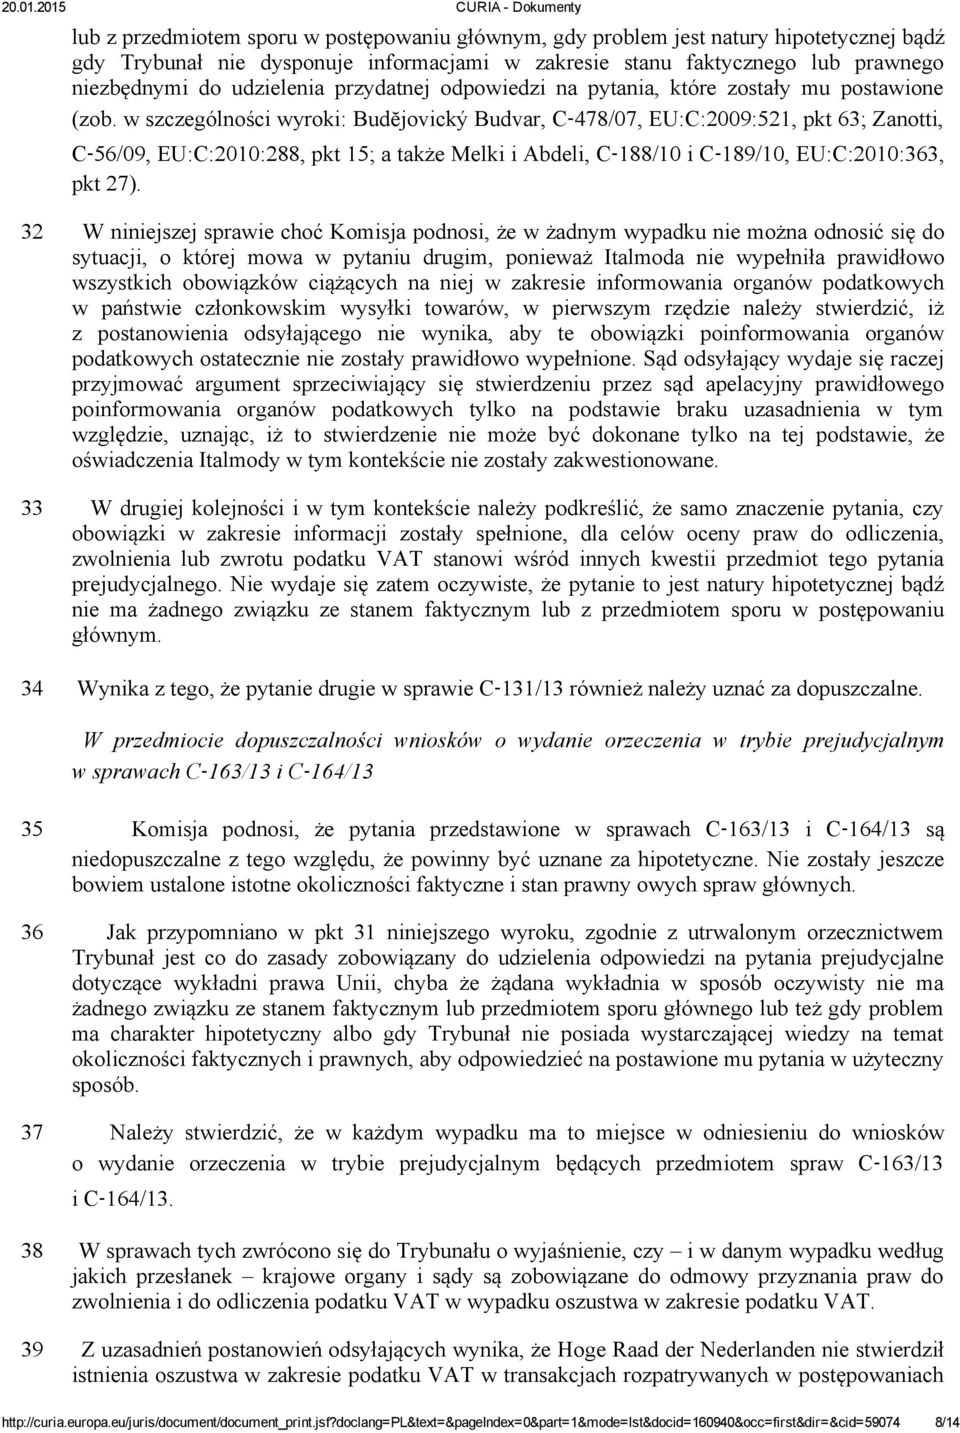 w szczególności wyroki: Budĕjovický Budvar, C 478/07, EU:C:2009:521, pkt 63; Zanotti, C 56/09, EU:C:2010:288, pkt 15; a także Melki i Abdeli, C 188/10 i C 189/10, EU:C:2010:363, pkt 27).